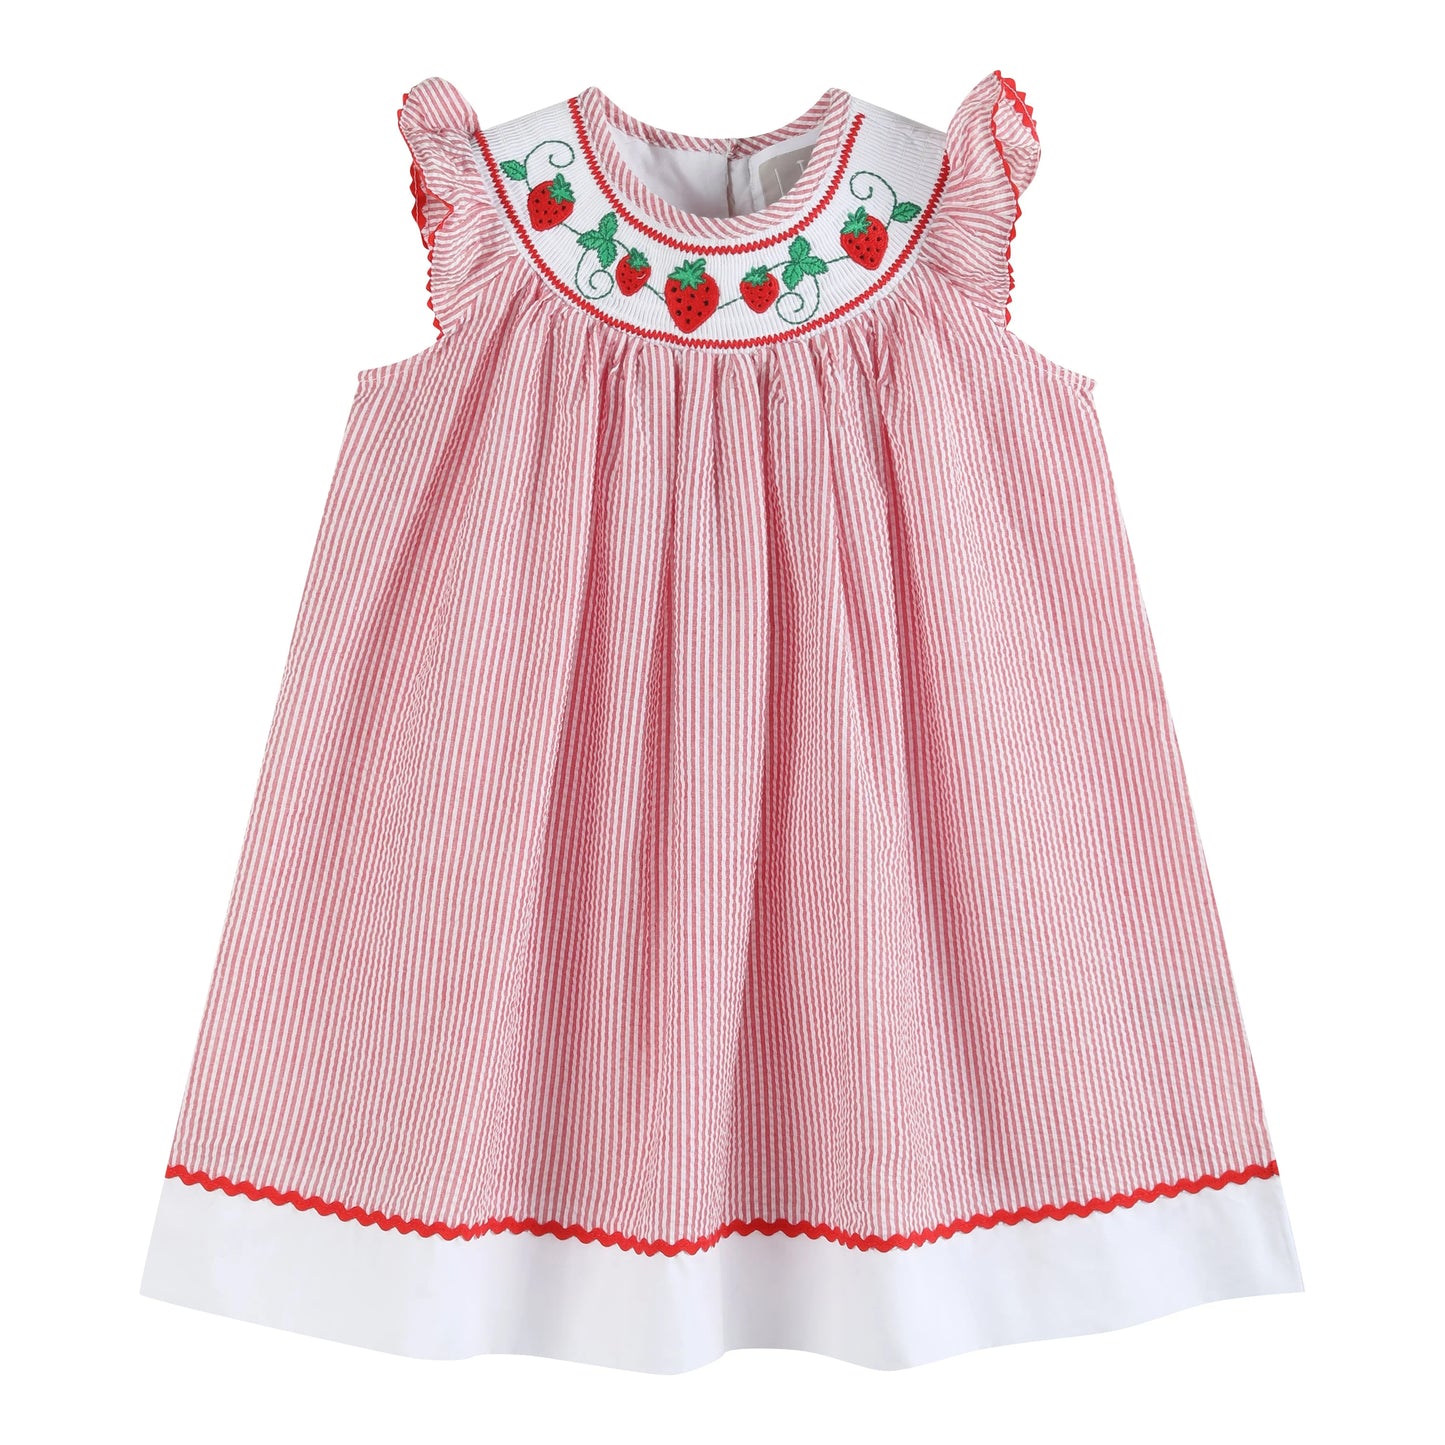 Red Seersucker Strawberry Smocked Dress  - Doodlebug's Children's Boutique